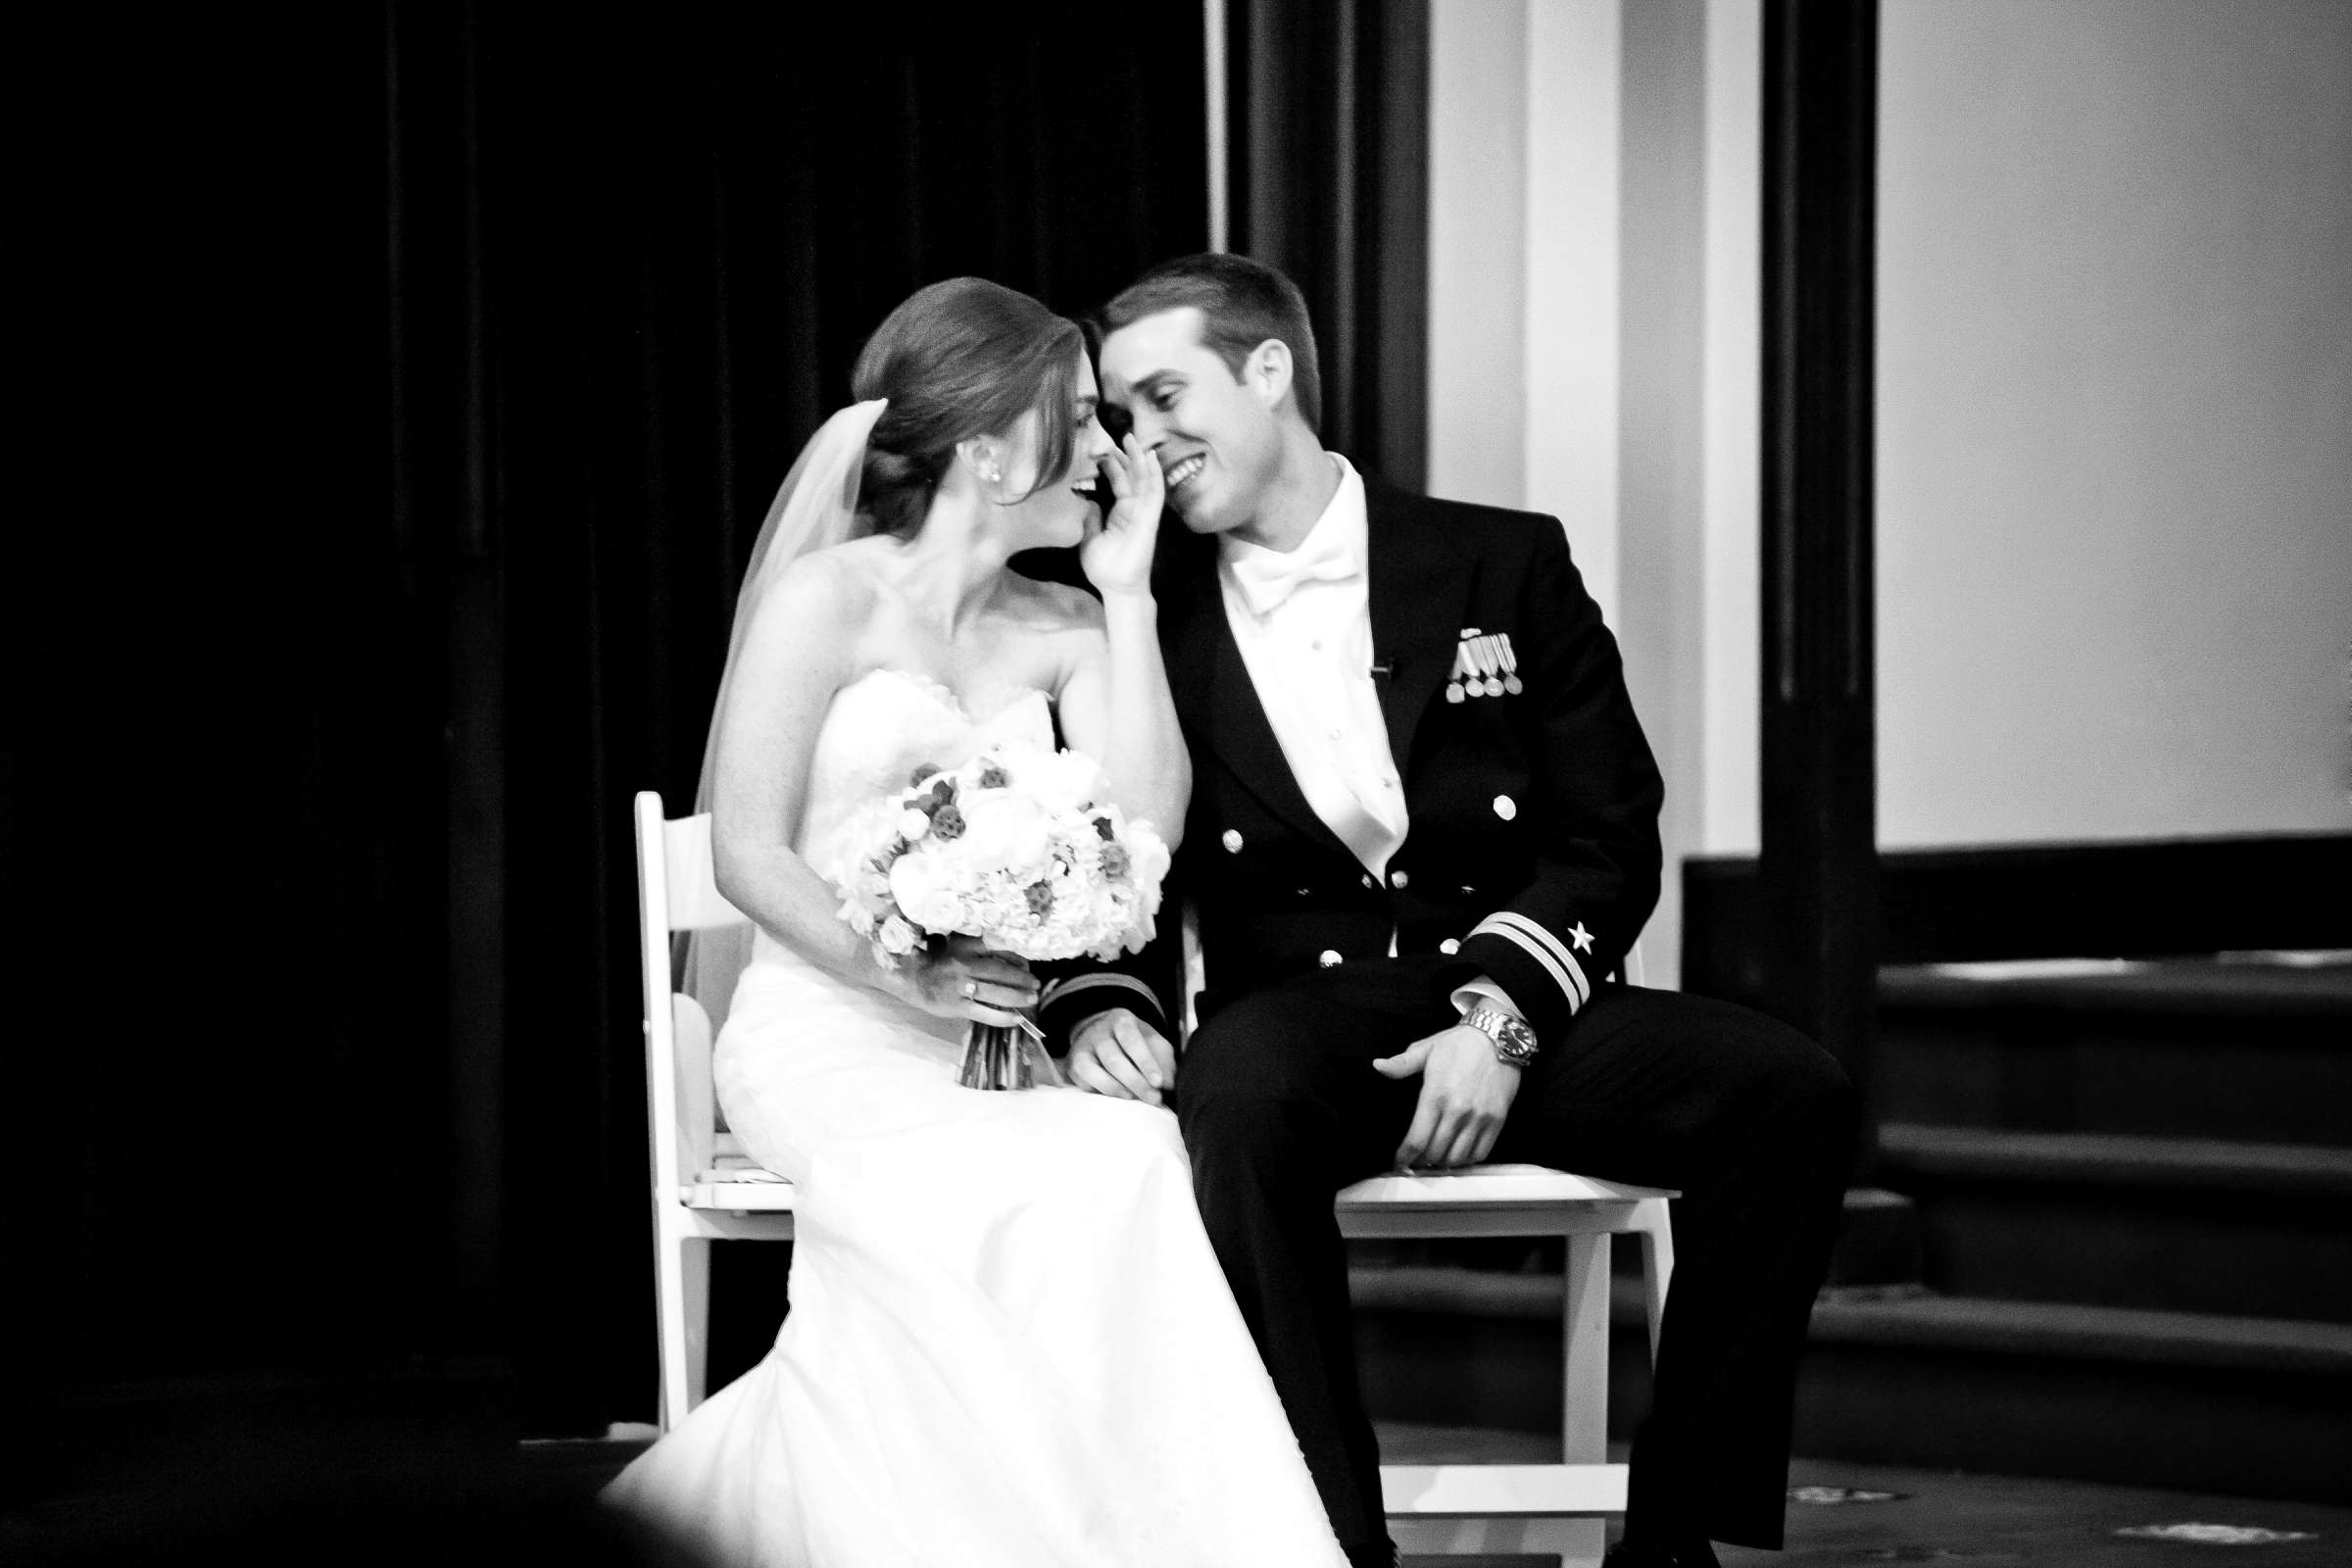 Admiral Kidd Club Wedding coordinated by I Do Weddings, Ashley and Rhett Wedding Photo #358471 by True Photography